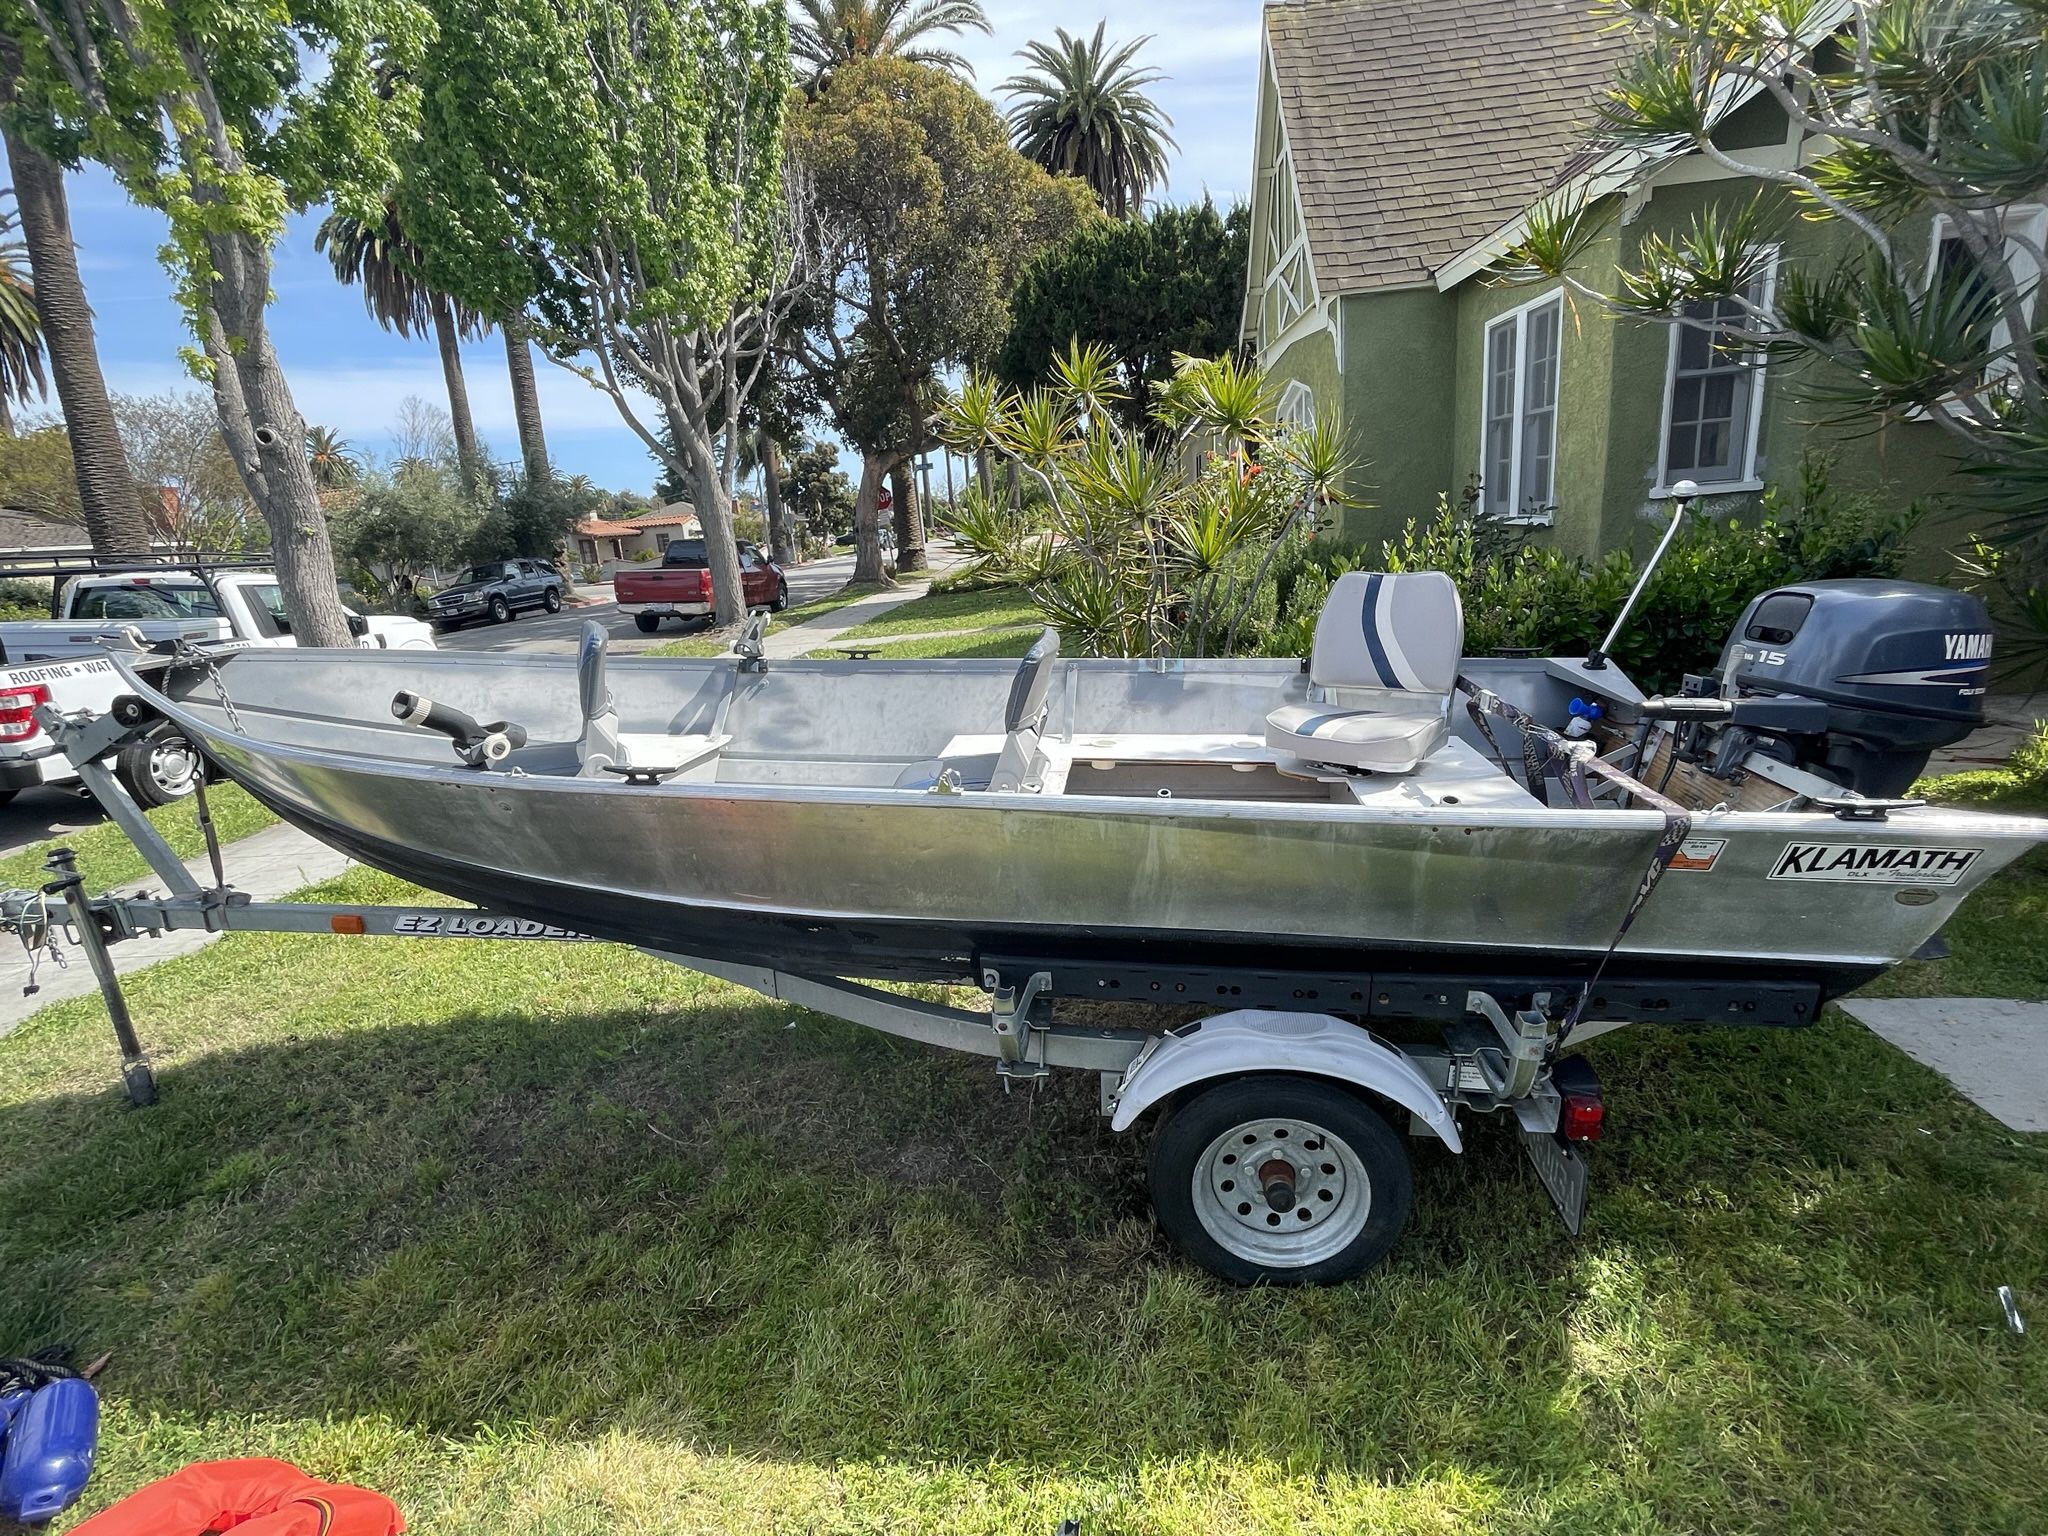 14’ Klamath Aluminum Boat W/ 15hp Electric Start4 Stroke